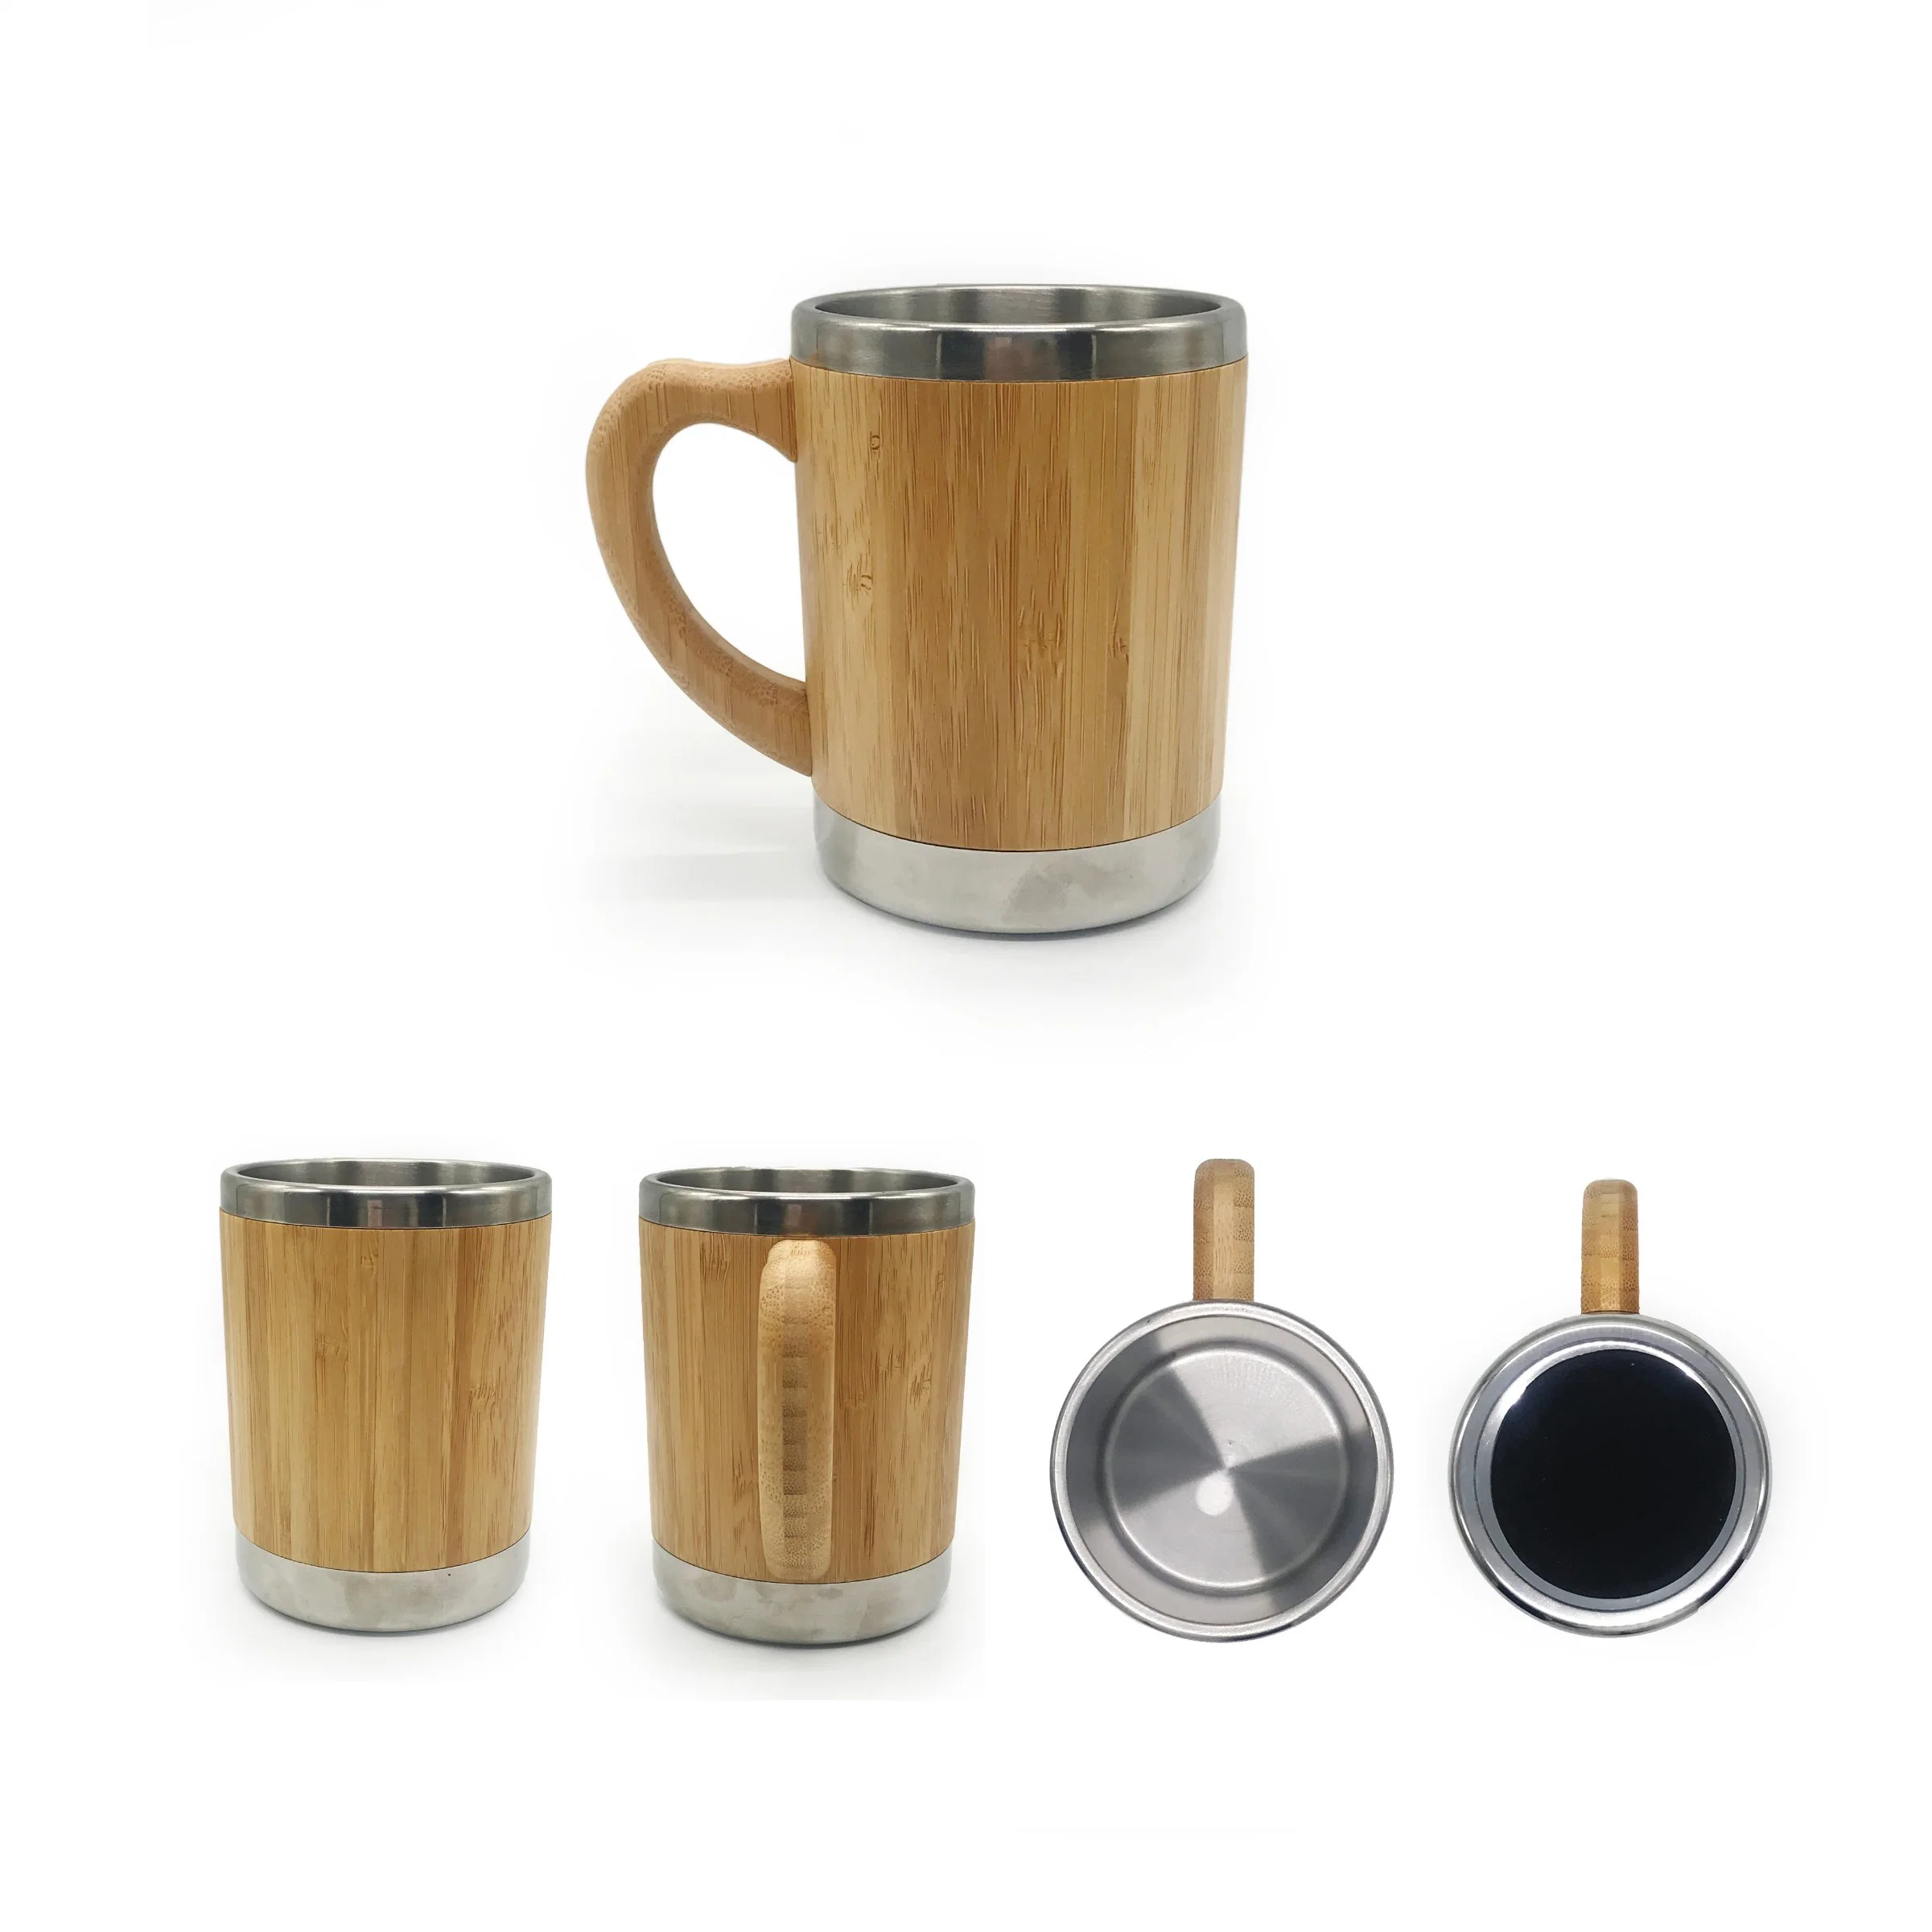 كوب من قهوة الخيزران مع كوب من الخيزران مخصص مع آلة تحضير القهوة من الفولاذ المقاوم للصدأ